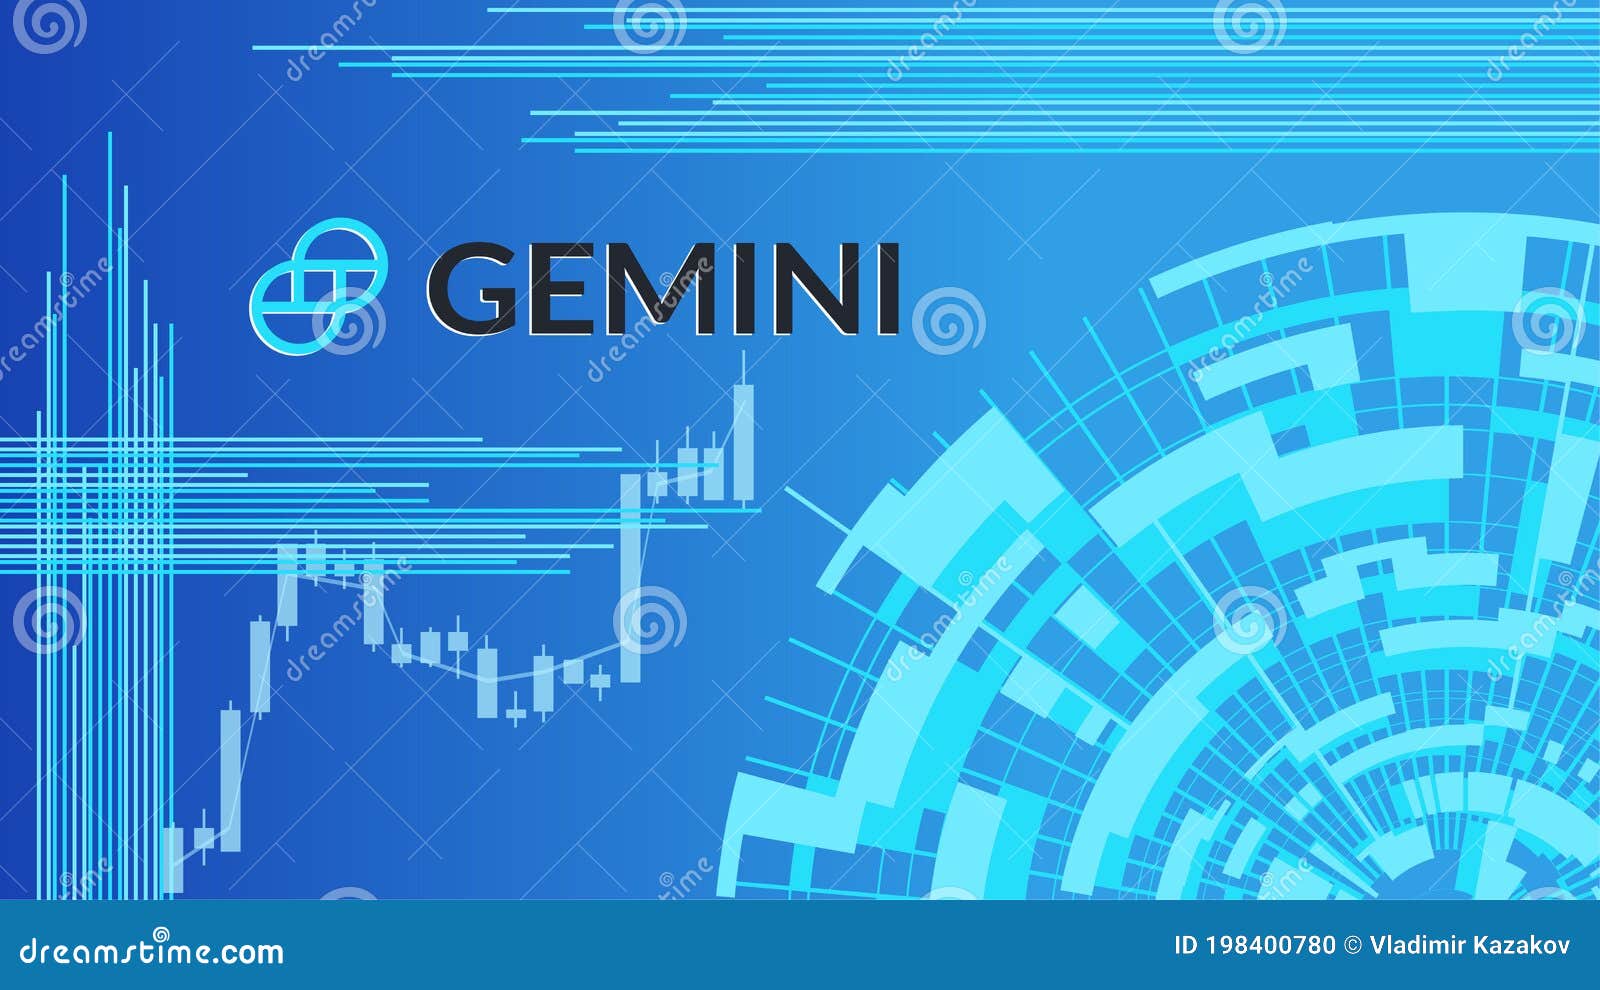 gemini crypto share price